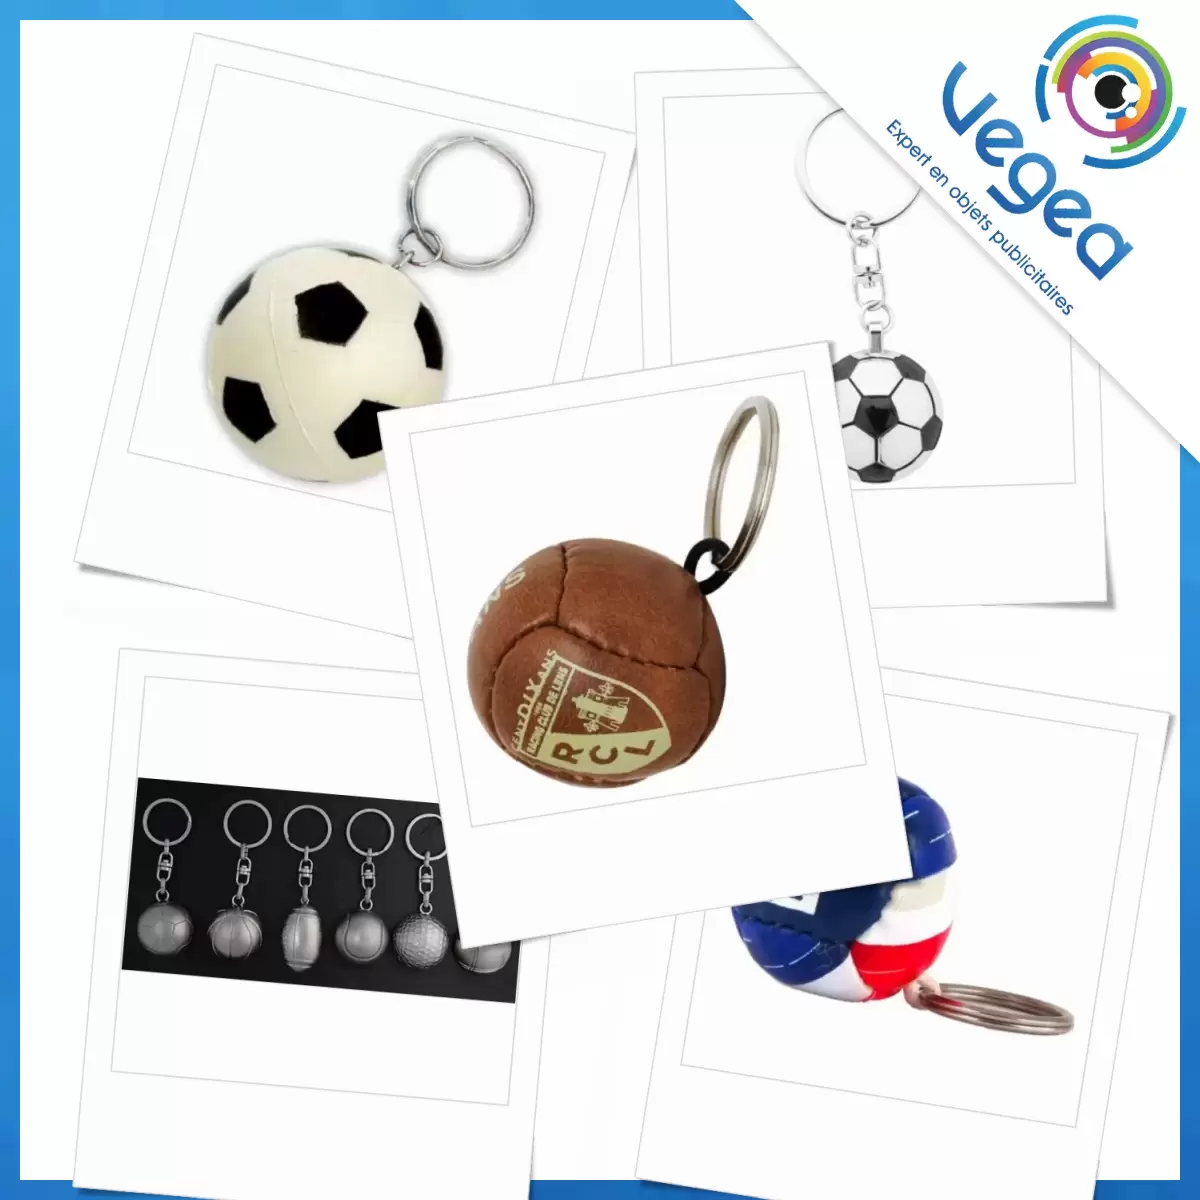 Porte-clés publicitaire ballon de football, Porte-clés ballons de football  personnalisés avec logo